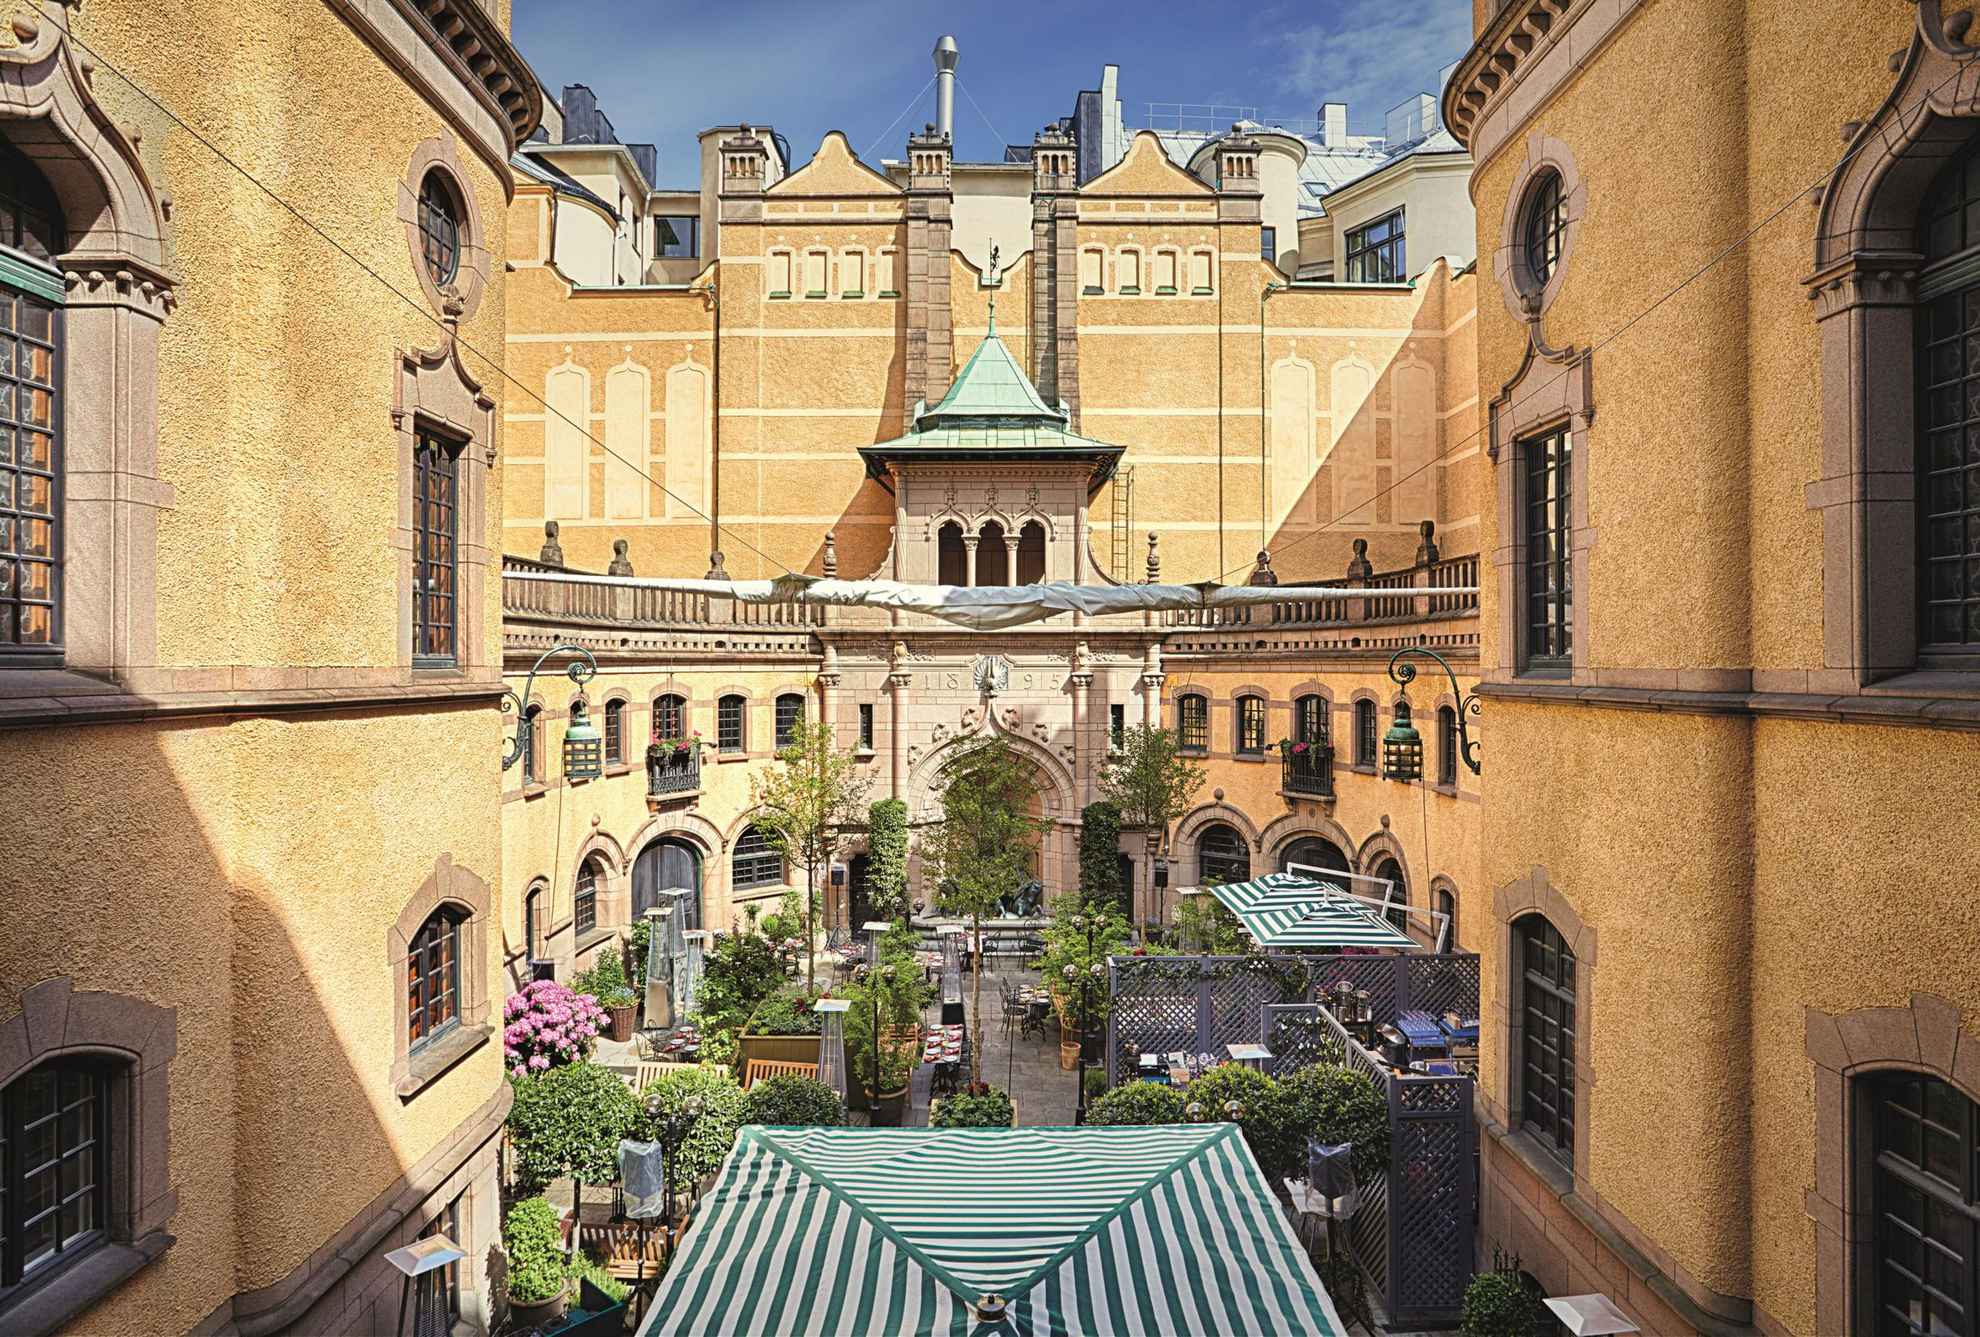 Het gebouw van het Hallwyl Museum in Stockholm. De binnenplaats met veel planten, tafels en een paar groen-wit gestreepte parasols.